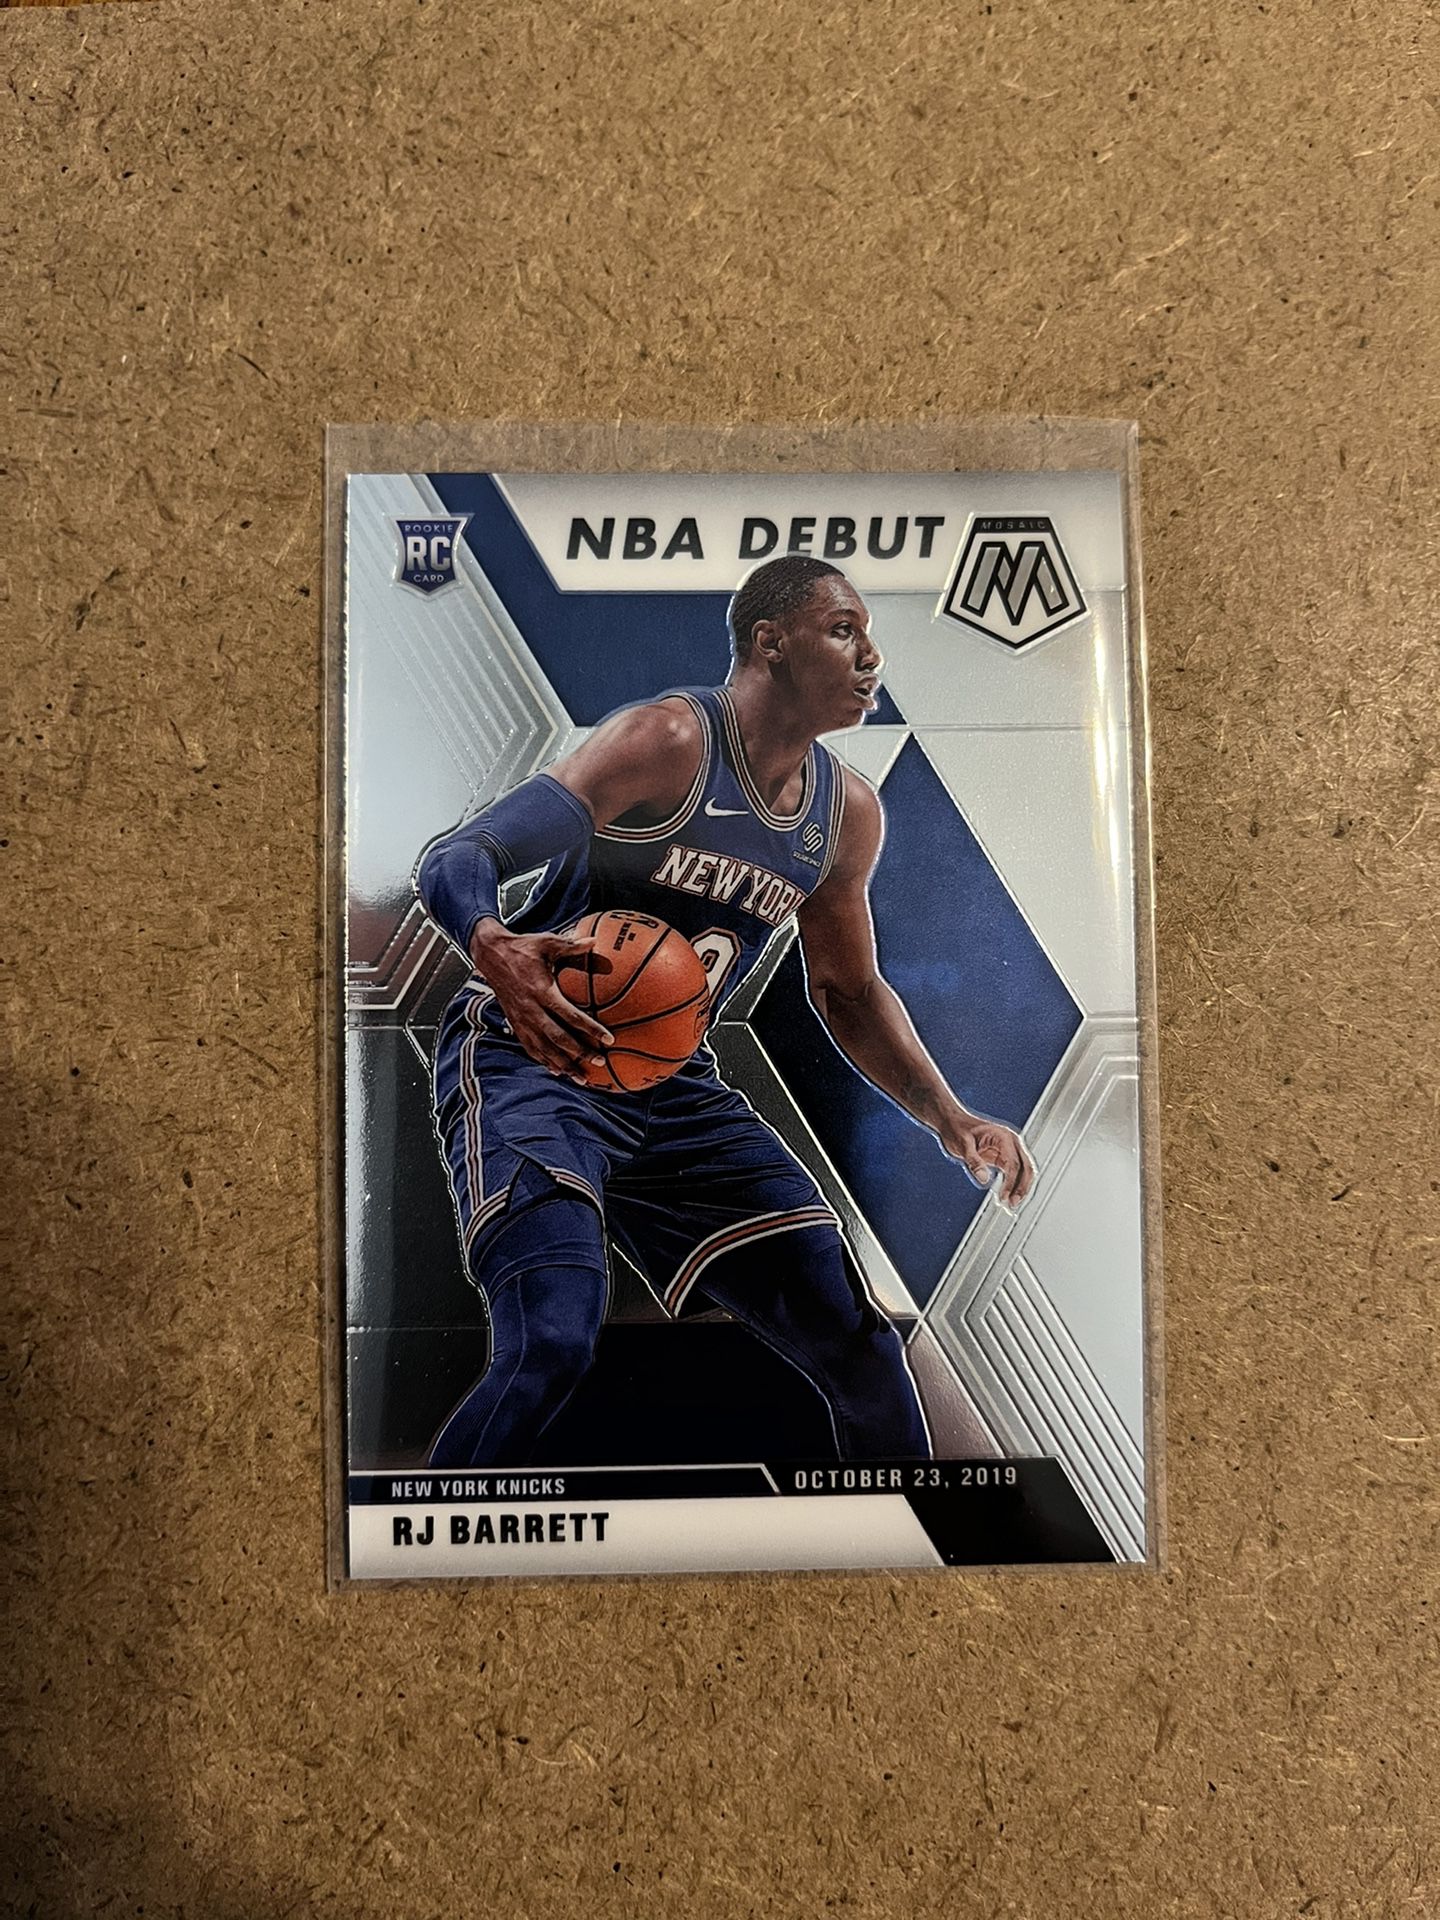 R.J. Barrett Mosaic “NBA Debut” Rookie Card